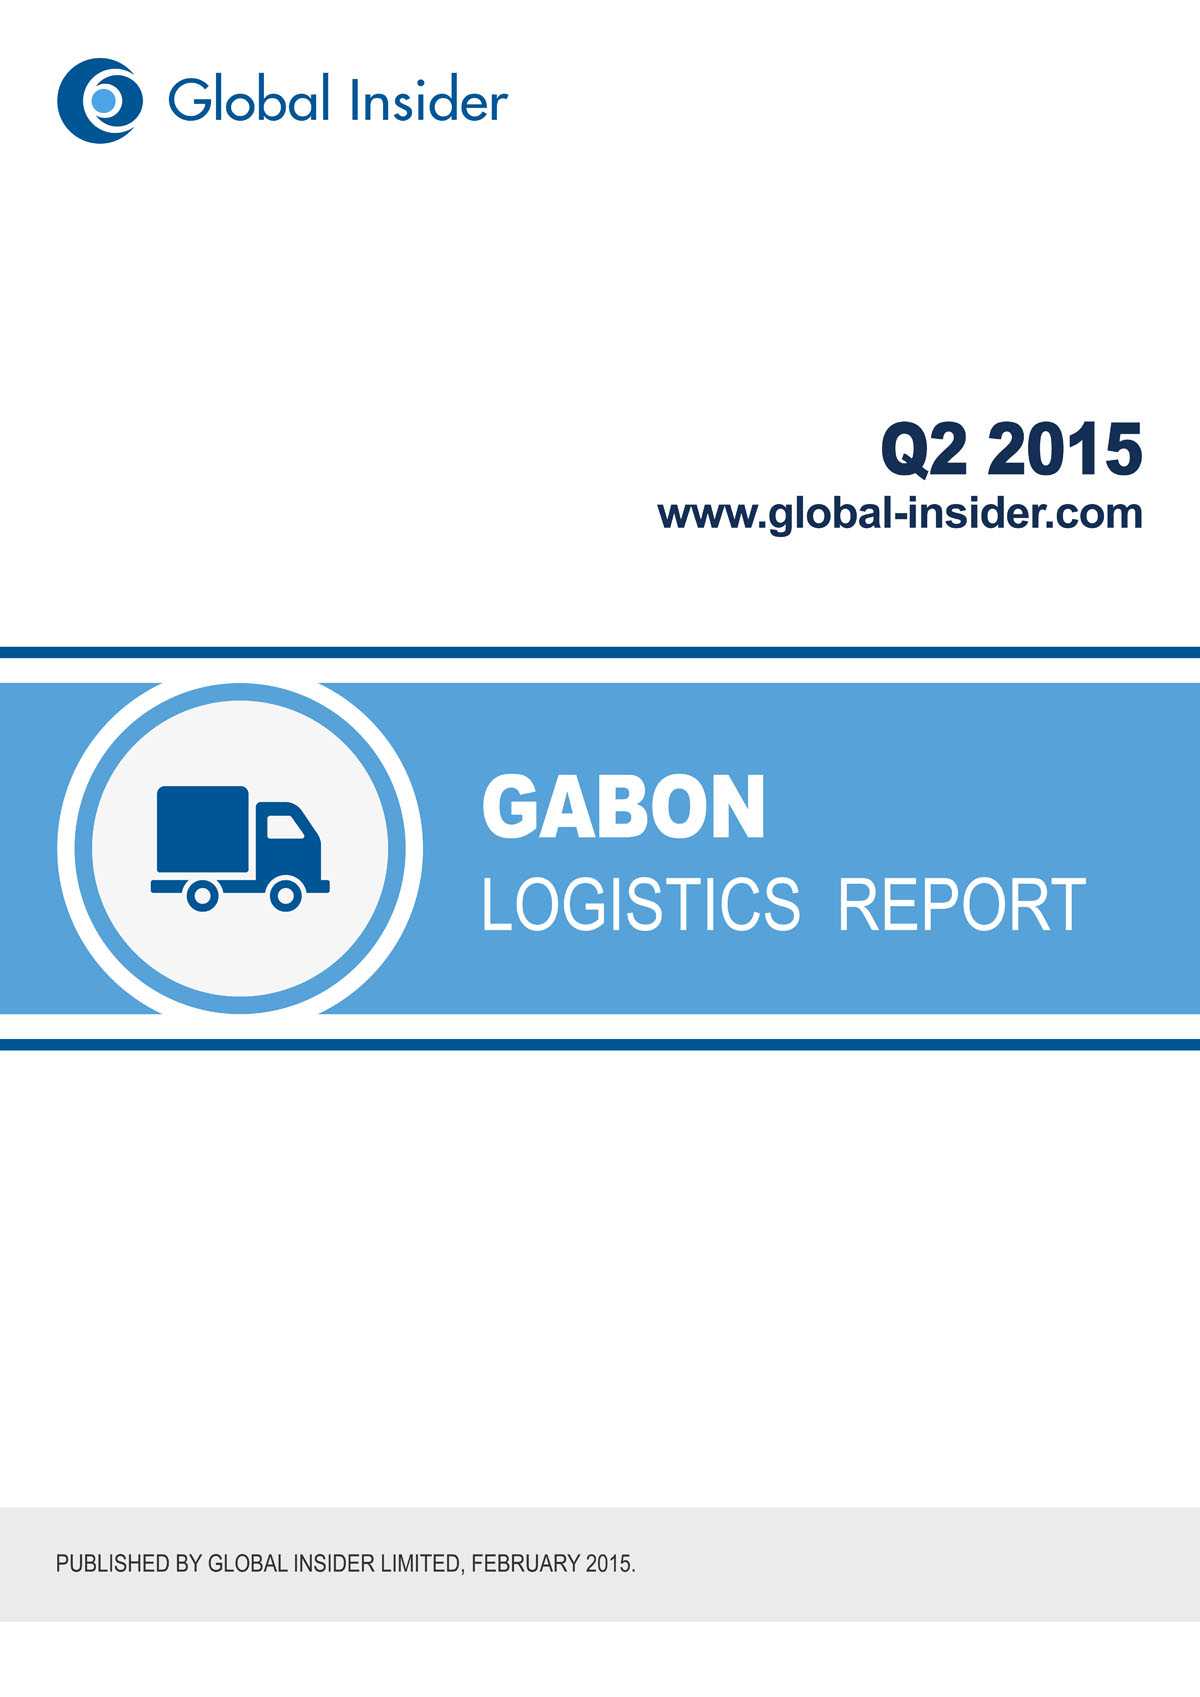 Gabon Logistics Report